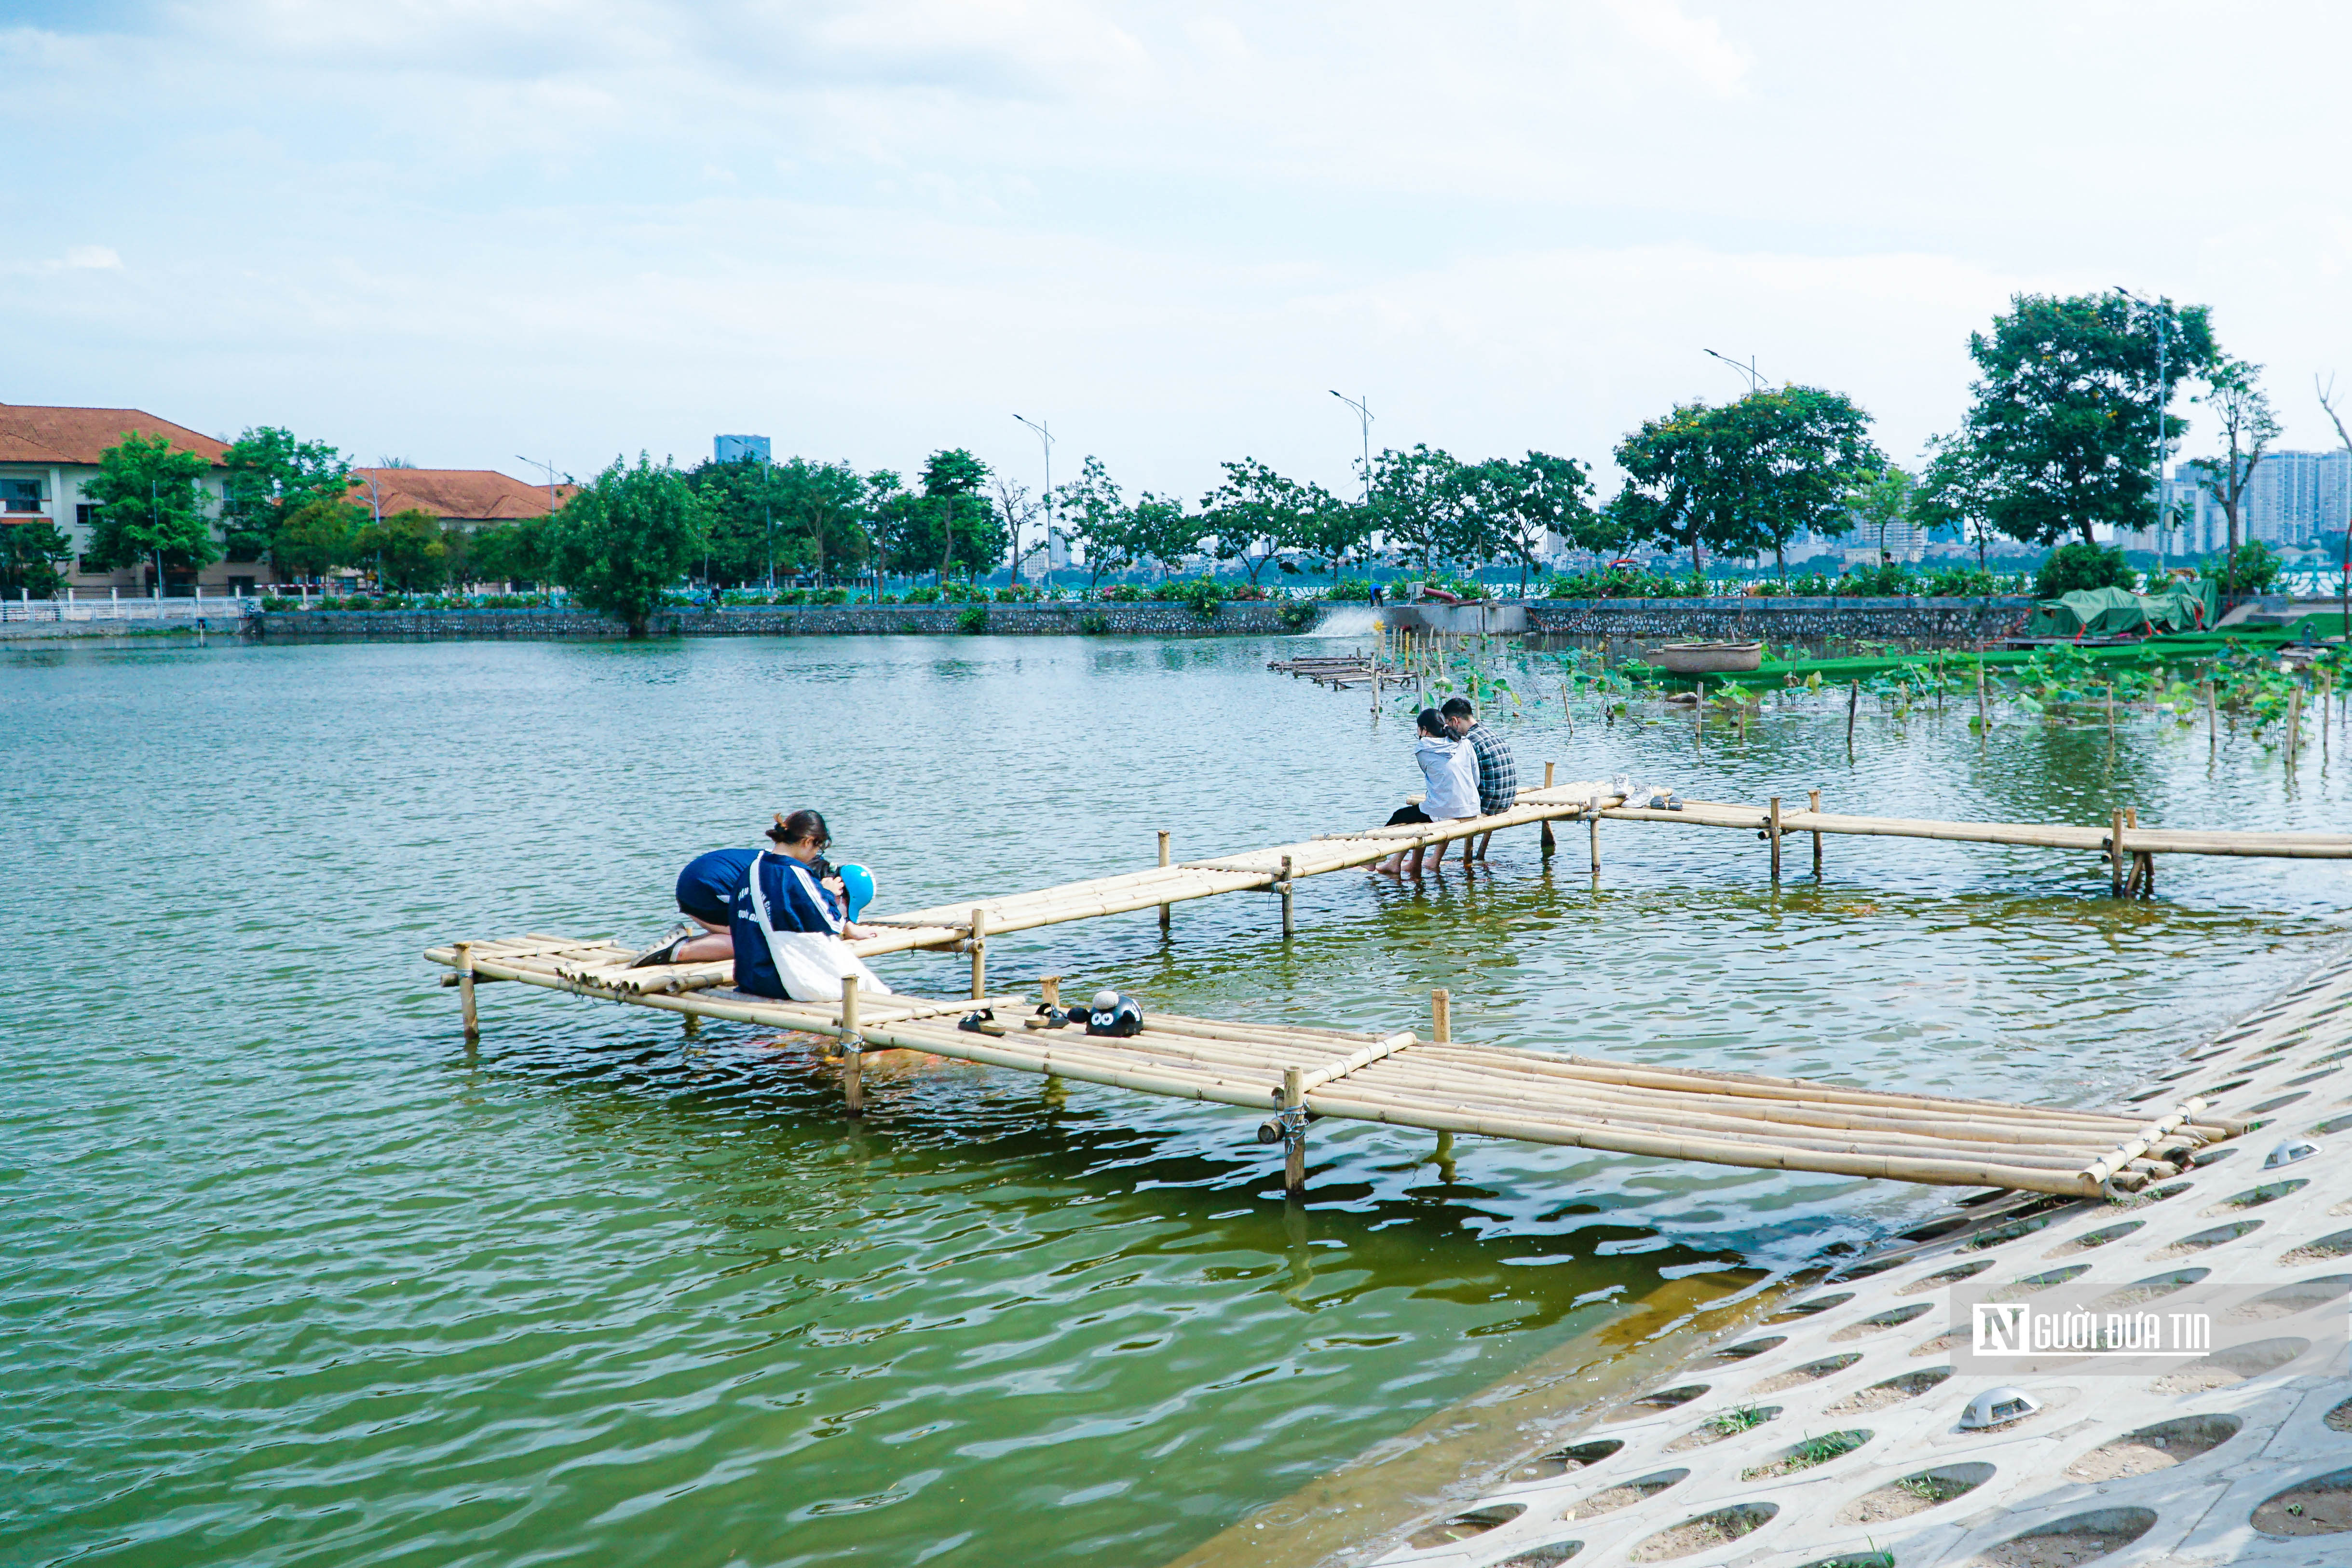 Dân sinh - Người dân Thủ đô thích thú trải nghiệm tại hồ cá koi rộng 3,5ha (Hình 2).